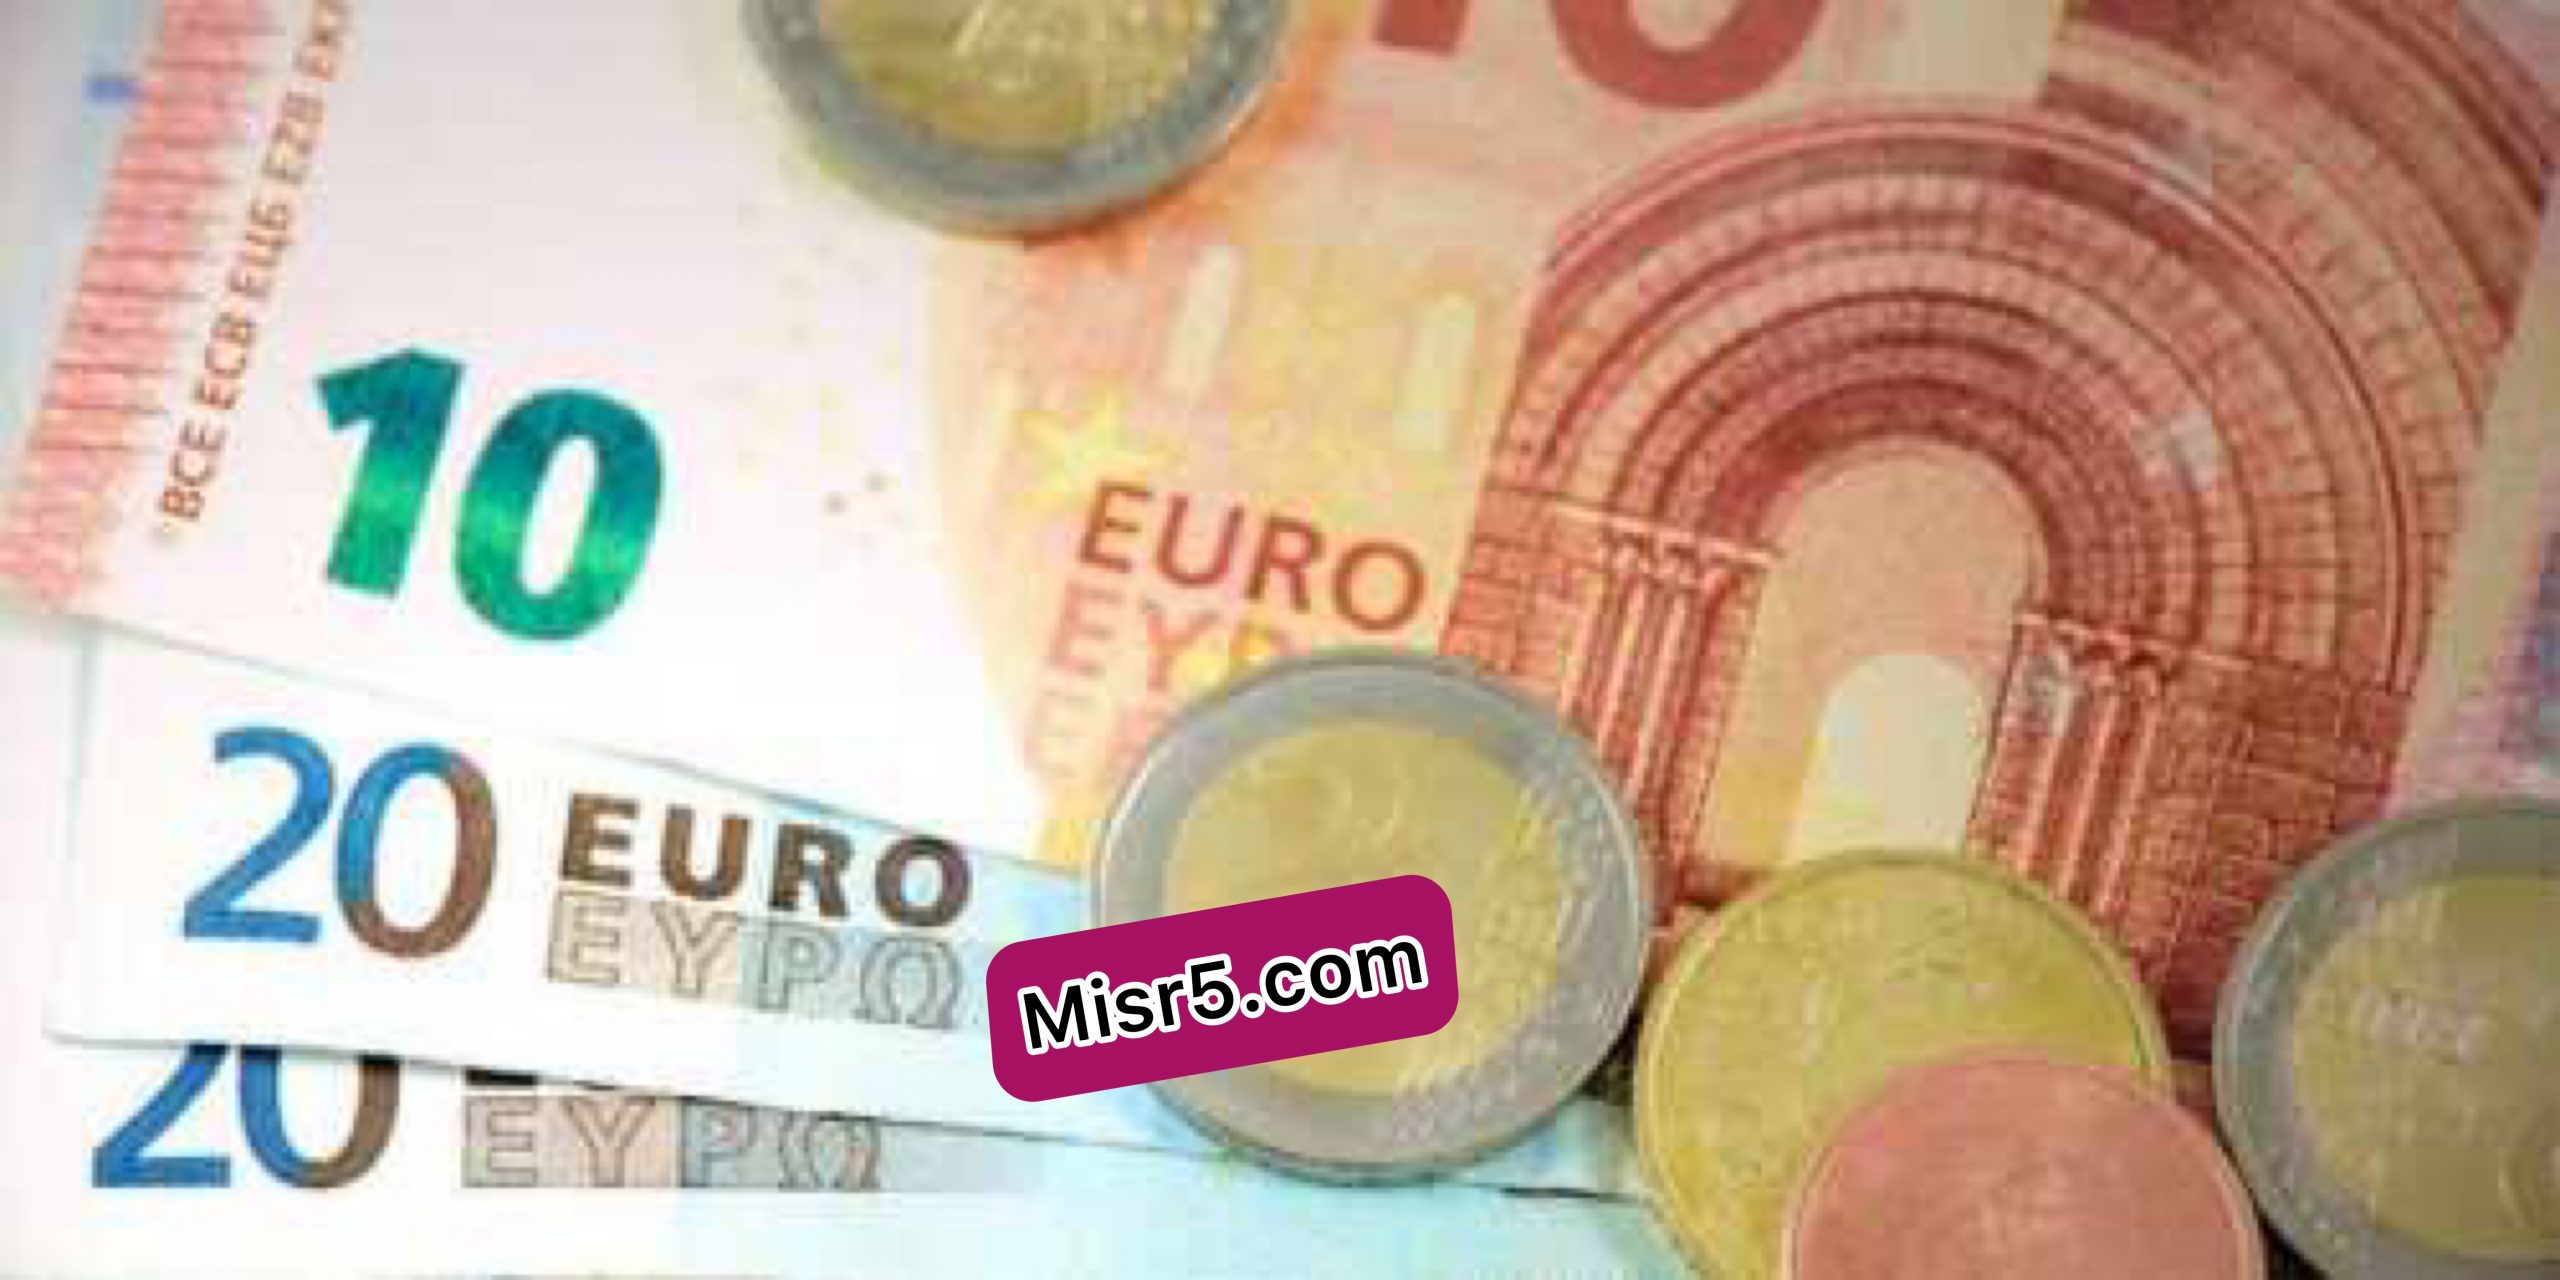 سعر اليورو اليوم في كافة البنوك المصرية- الأربعاء 31 مارس 2021